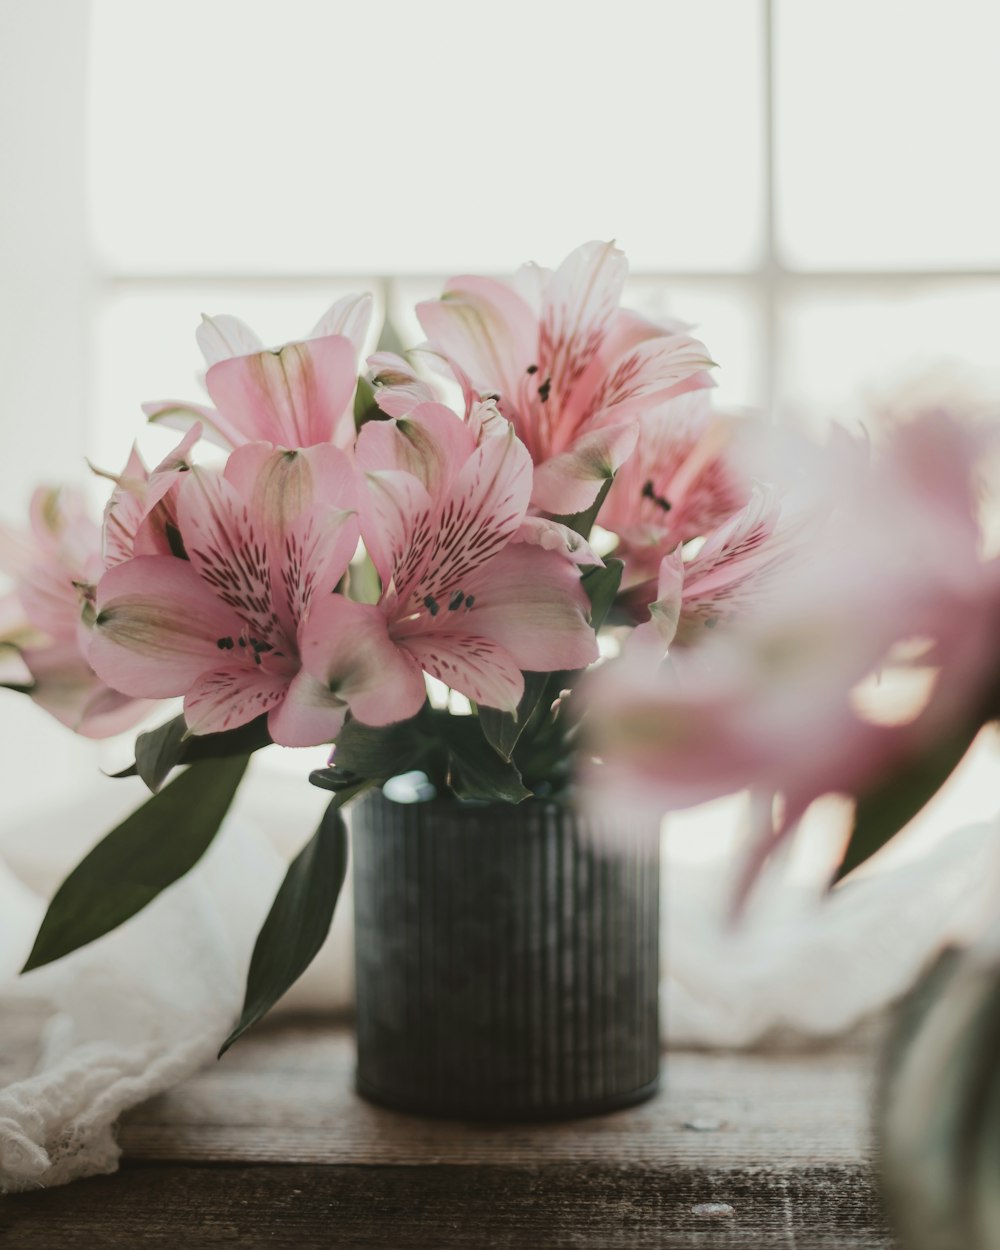 fiori rosa e bianchi in vaso di ceramica nera